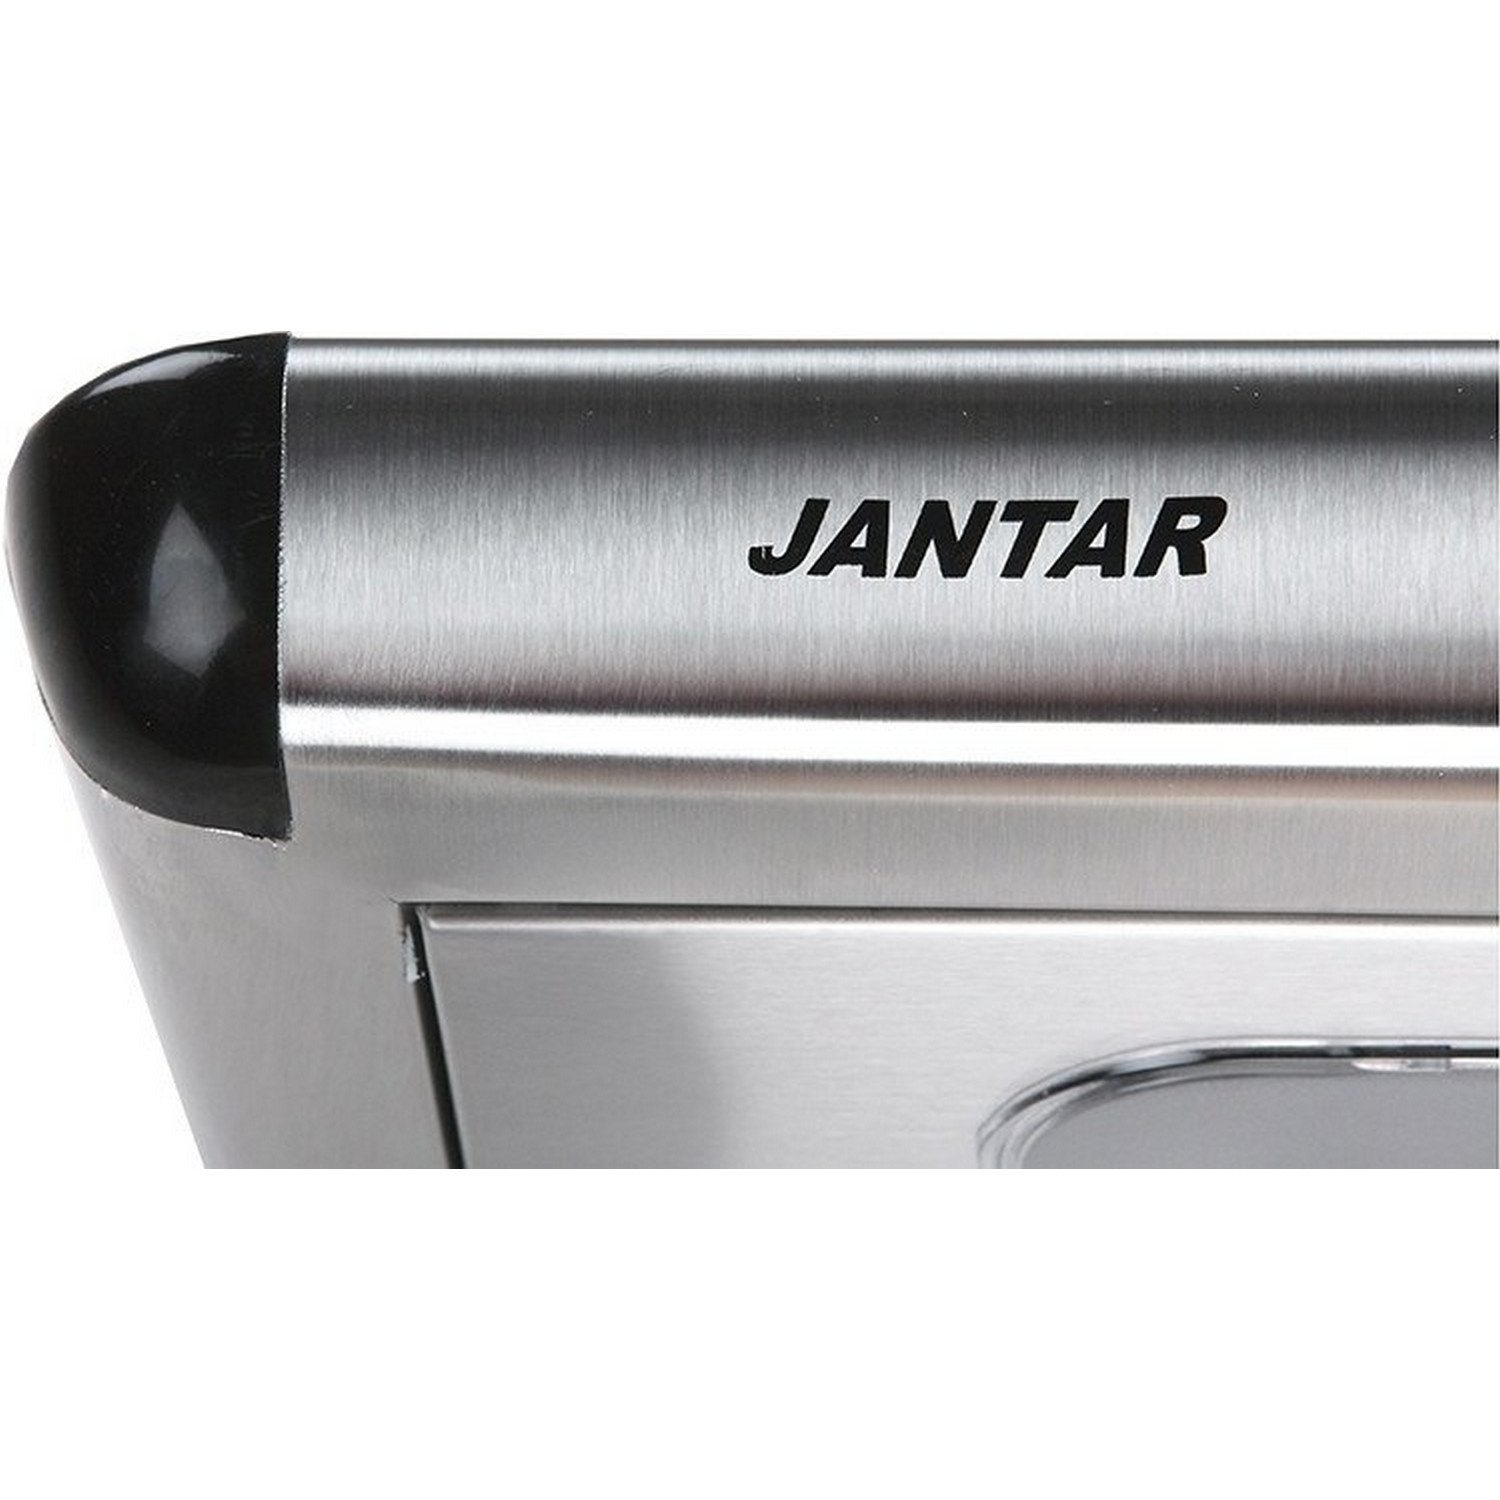 Кухонная вытяжка Jantar Passat 50 IS отзывы - изображения 5